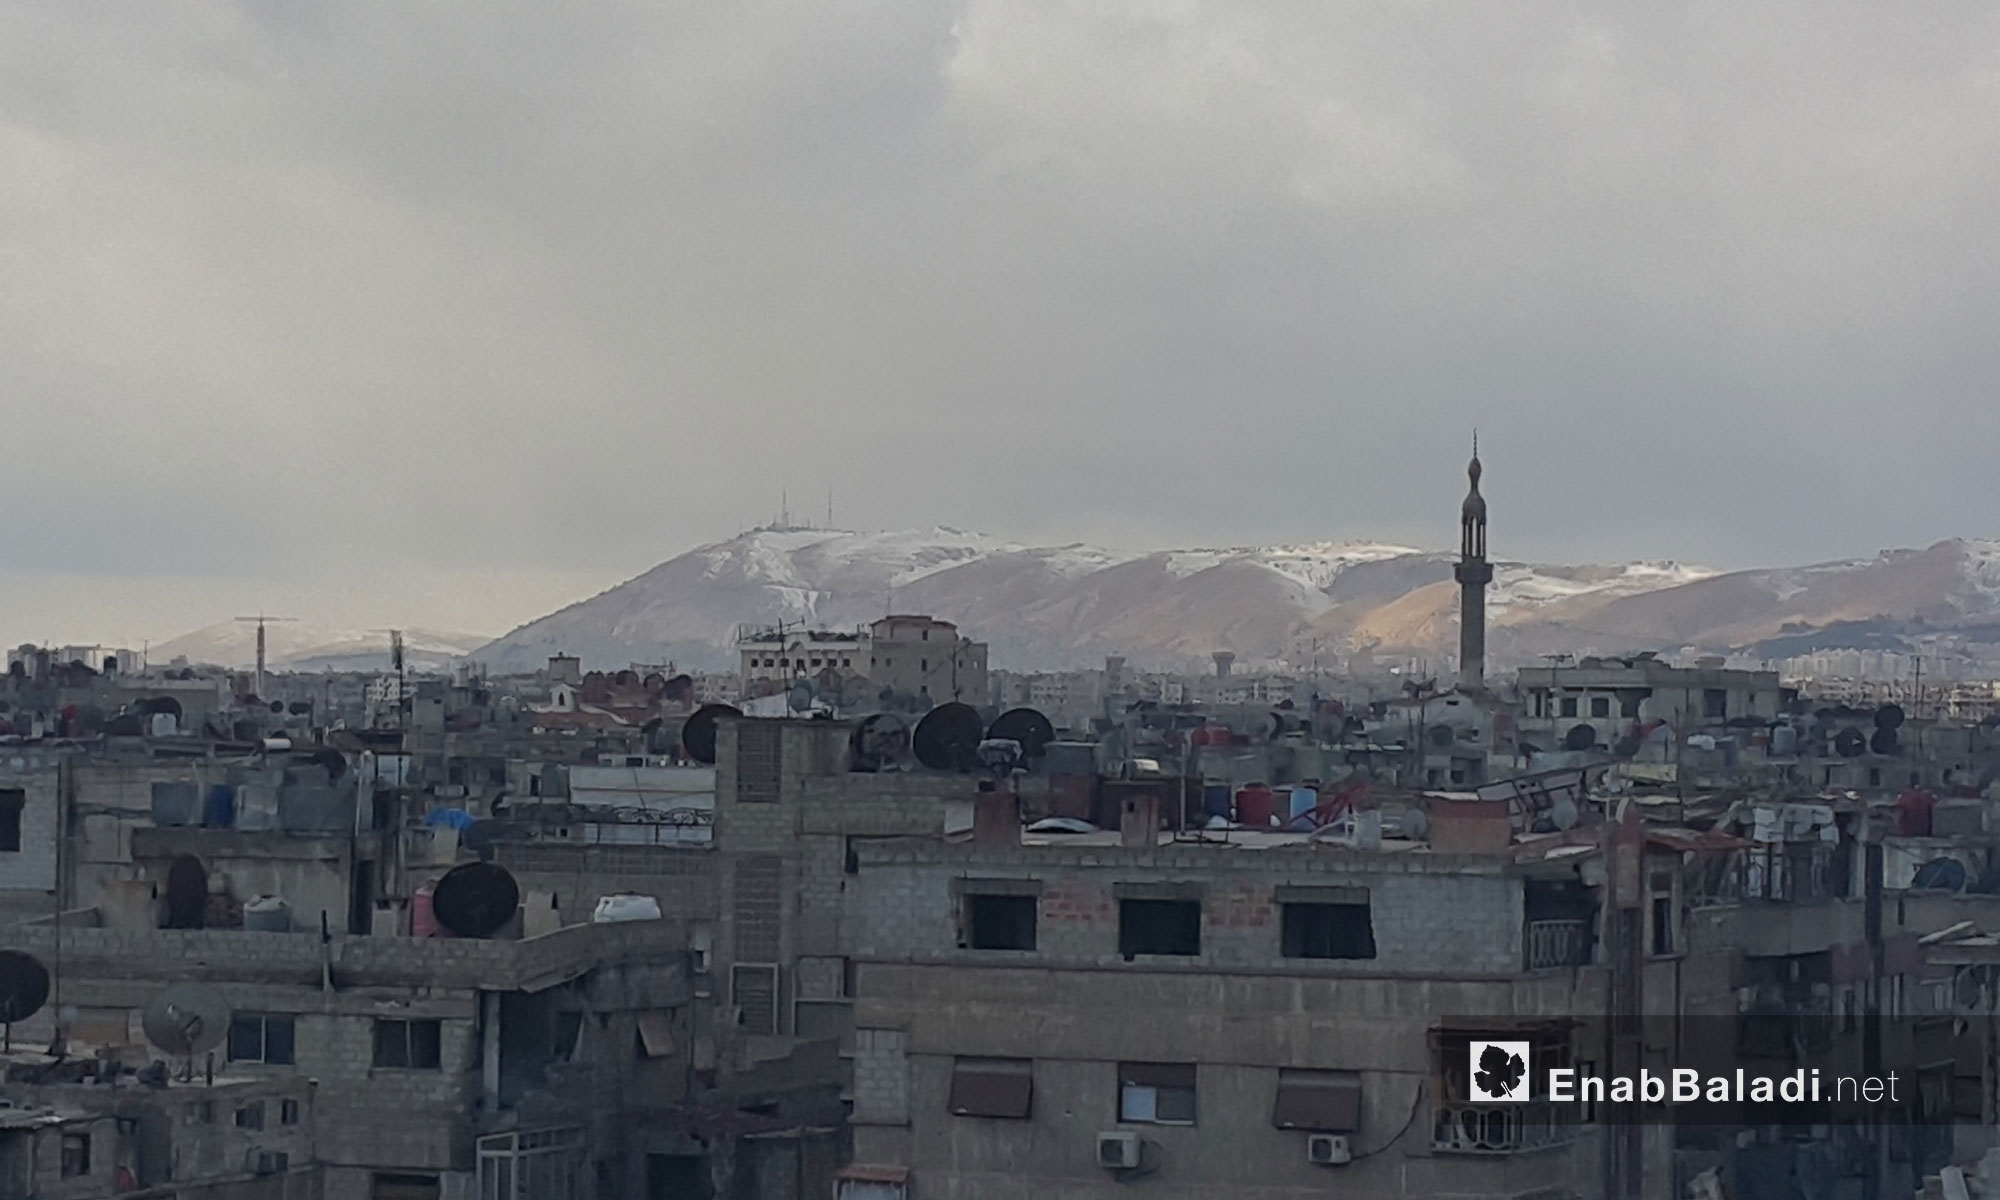 قمة جبل قاسيون  المحيط بالعاصمة دمشق تكسوها الثلوج - 28 كانون الثاني 2017 (عنب بلدي)